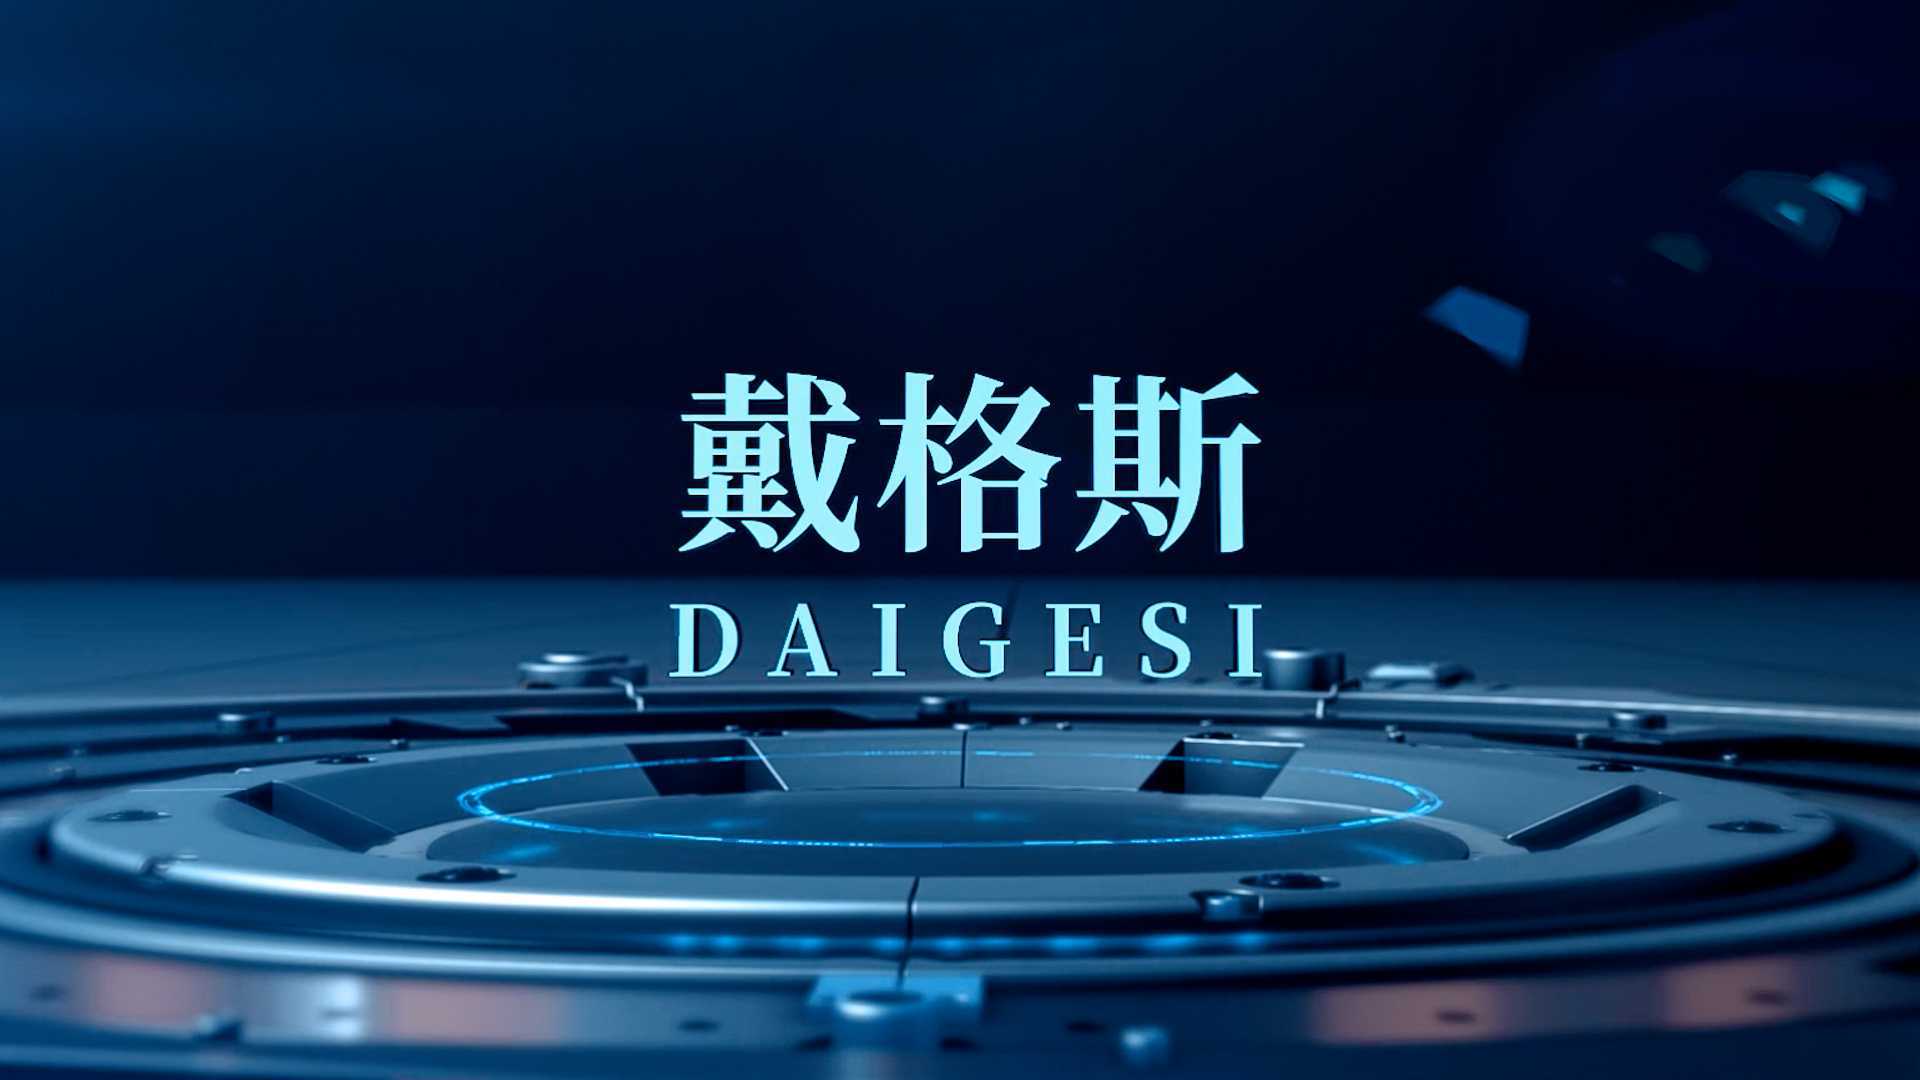 戴格斯家用电器厂宣传片-中文版